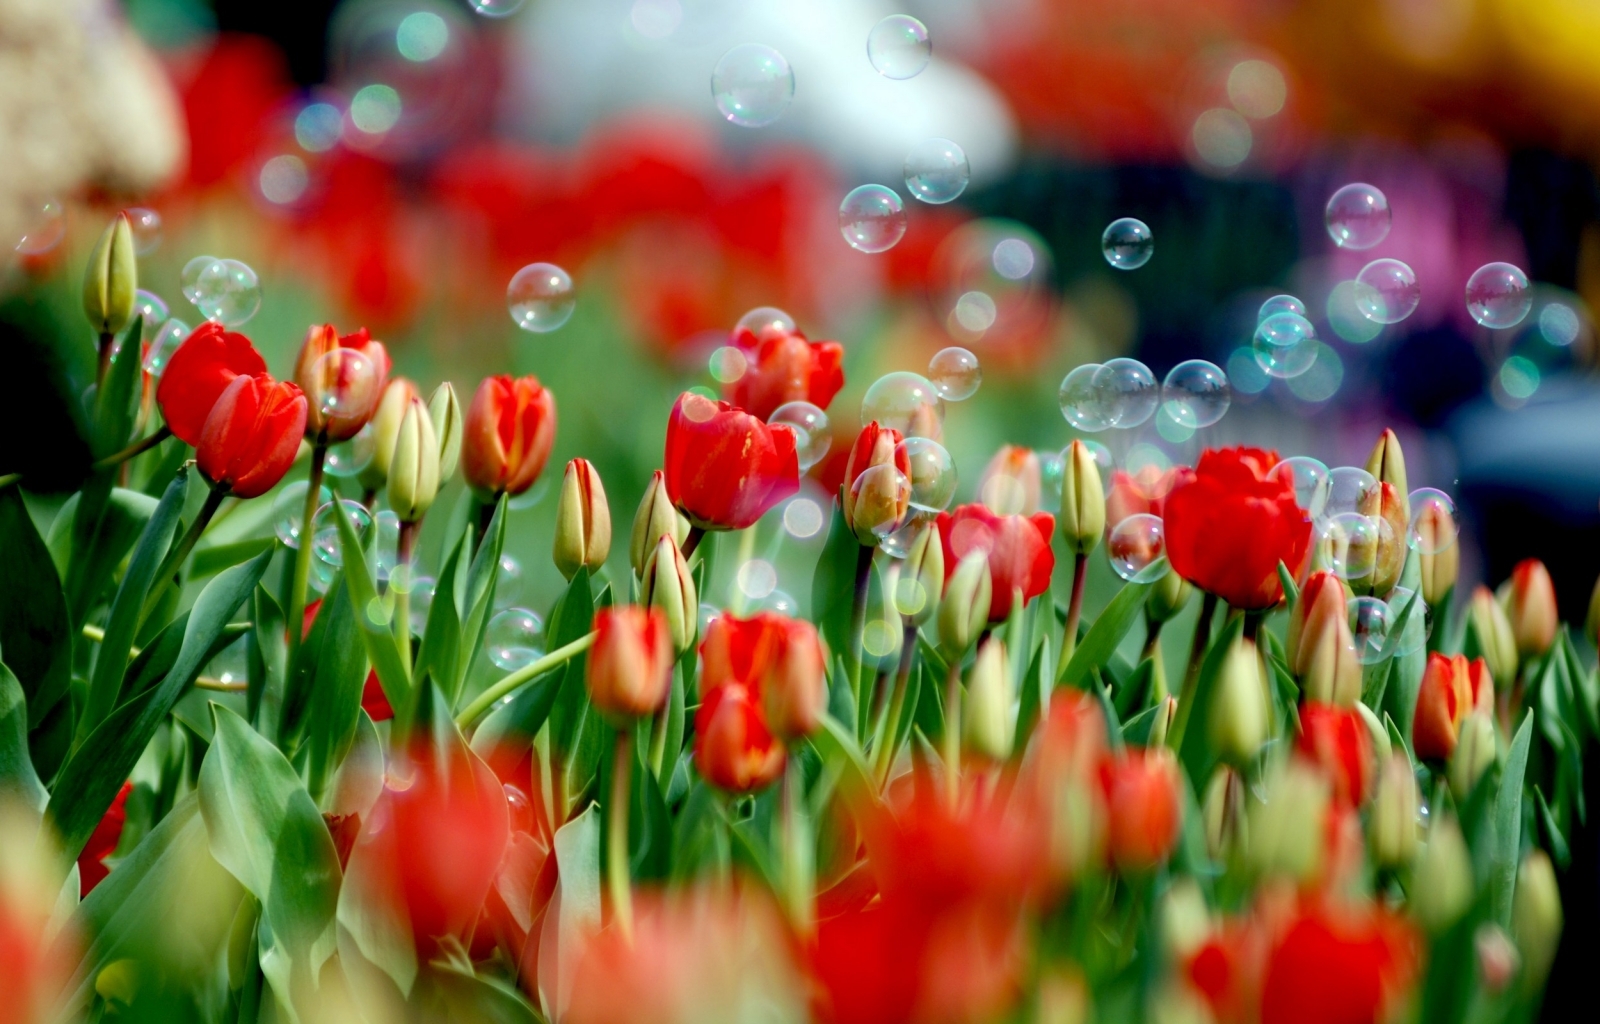 Скачать обои бесплатно Тюльпаны, Растения картинка на рабочий стол ПК